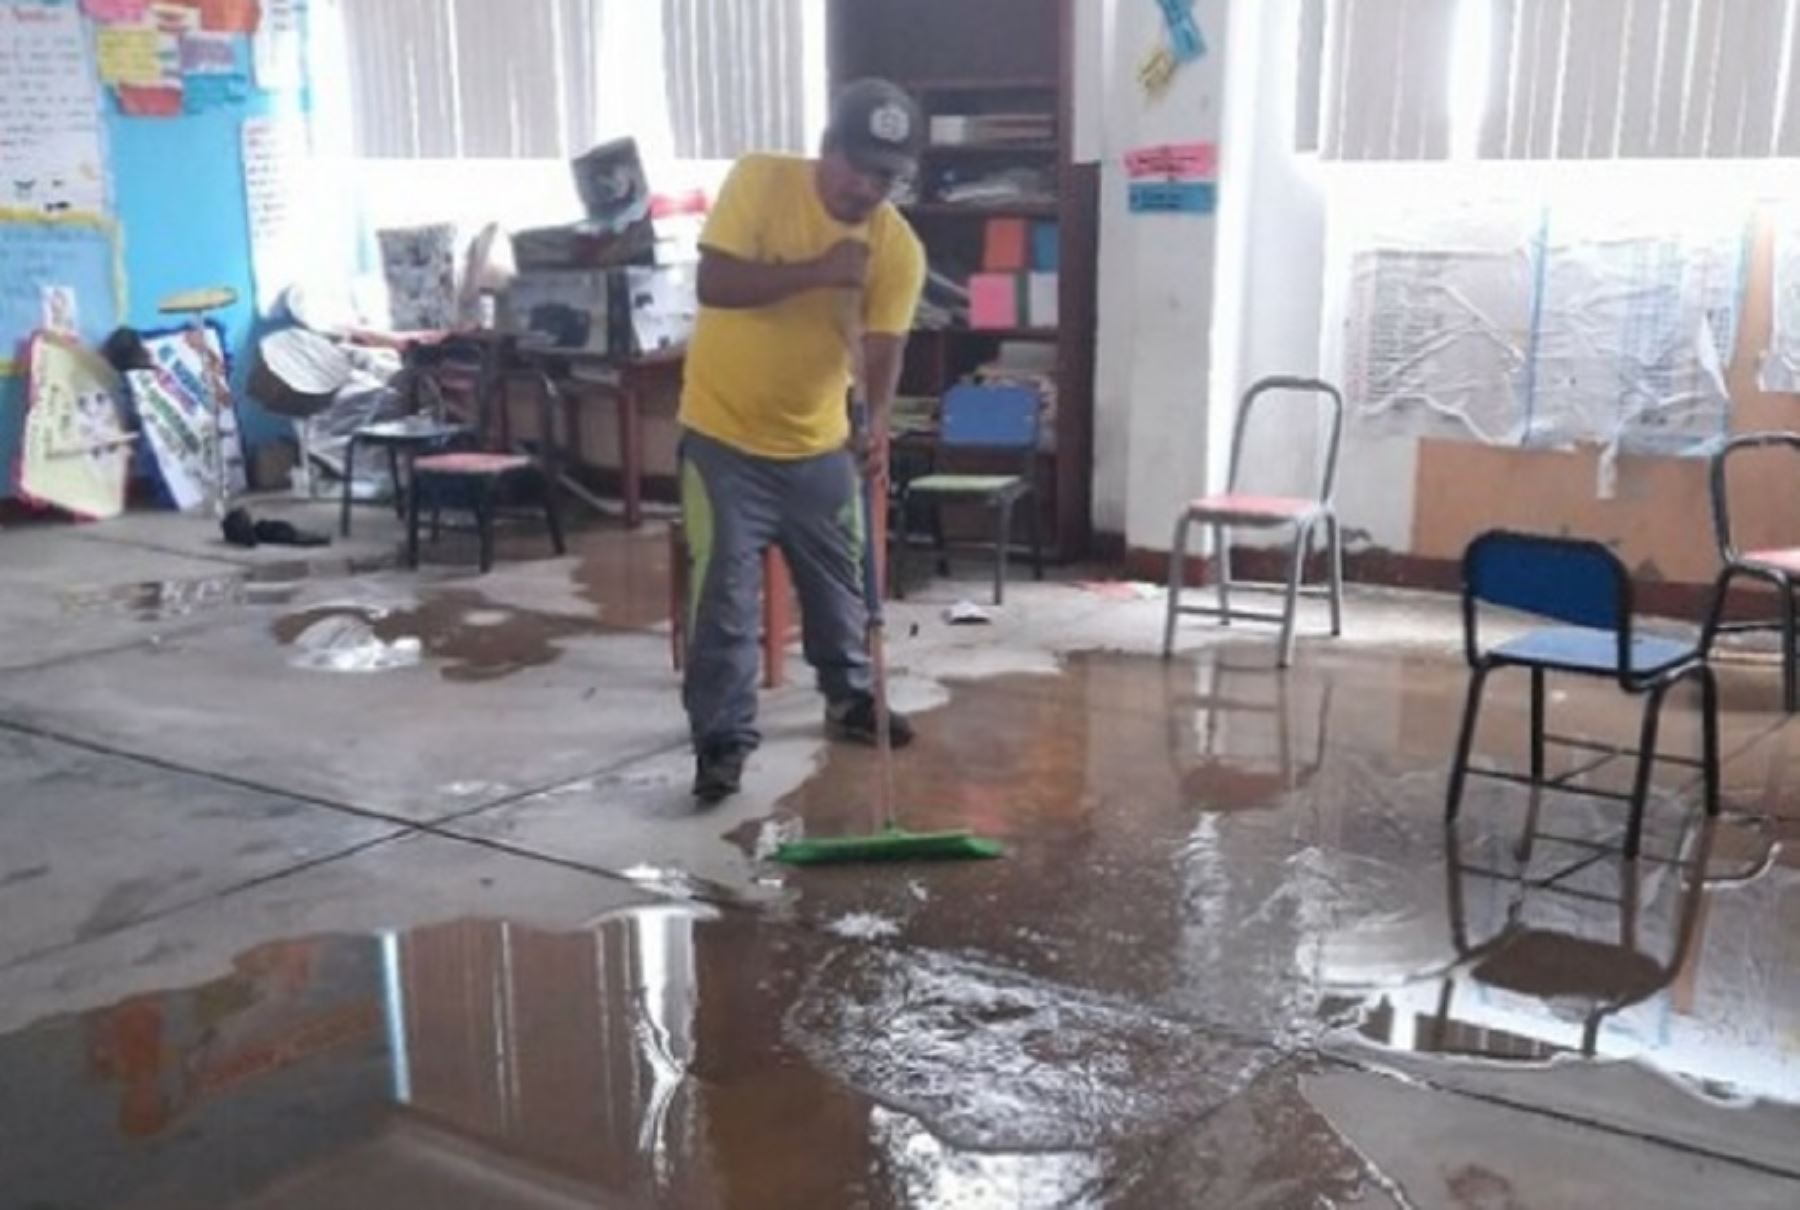 Siete escuelas de Arequipa y cuatro de Lima Provincias resultaron afectadas por huaicos e inundaciones registrados en los últimos días, informó el Ministerio de Educación (Minedu) que aseveró que ha desplazado brigadas de emergencia para evaluar los daños y coordinar acciones de respuesta.